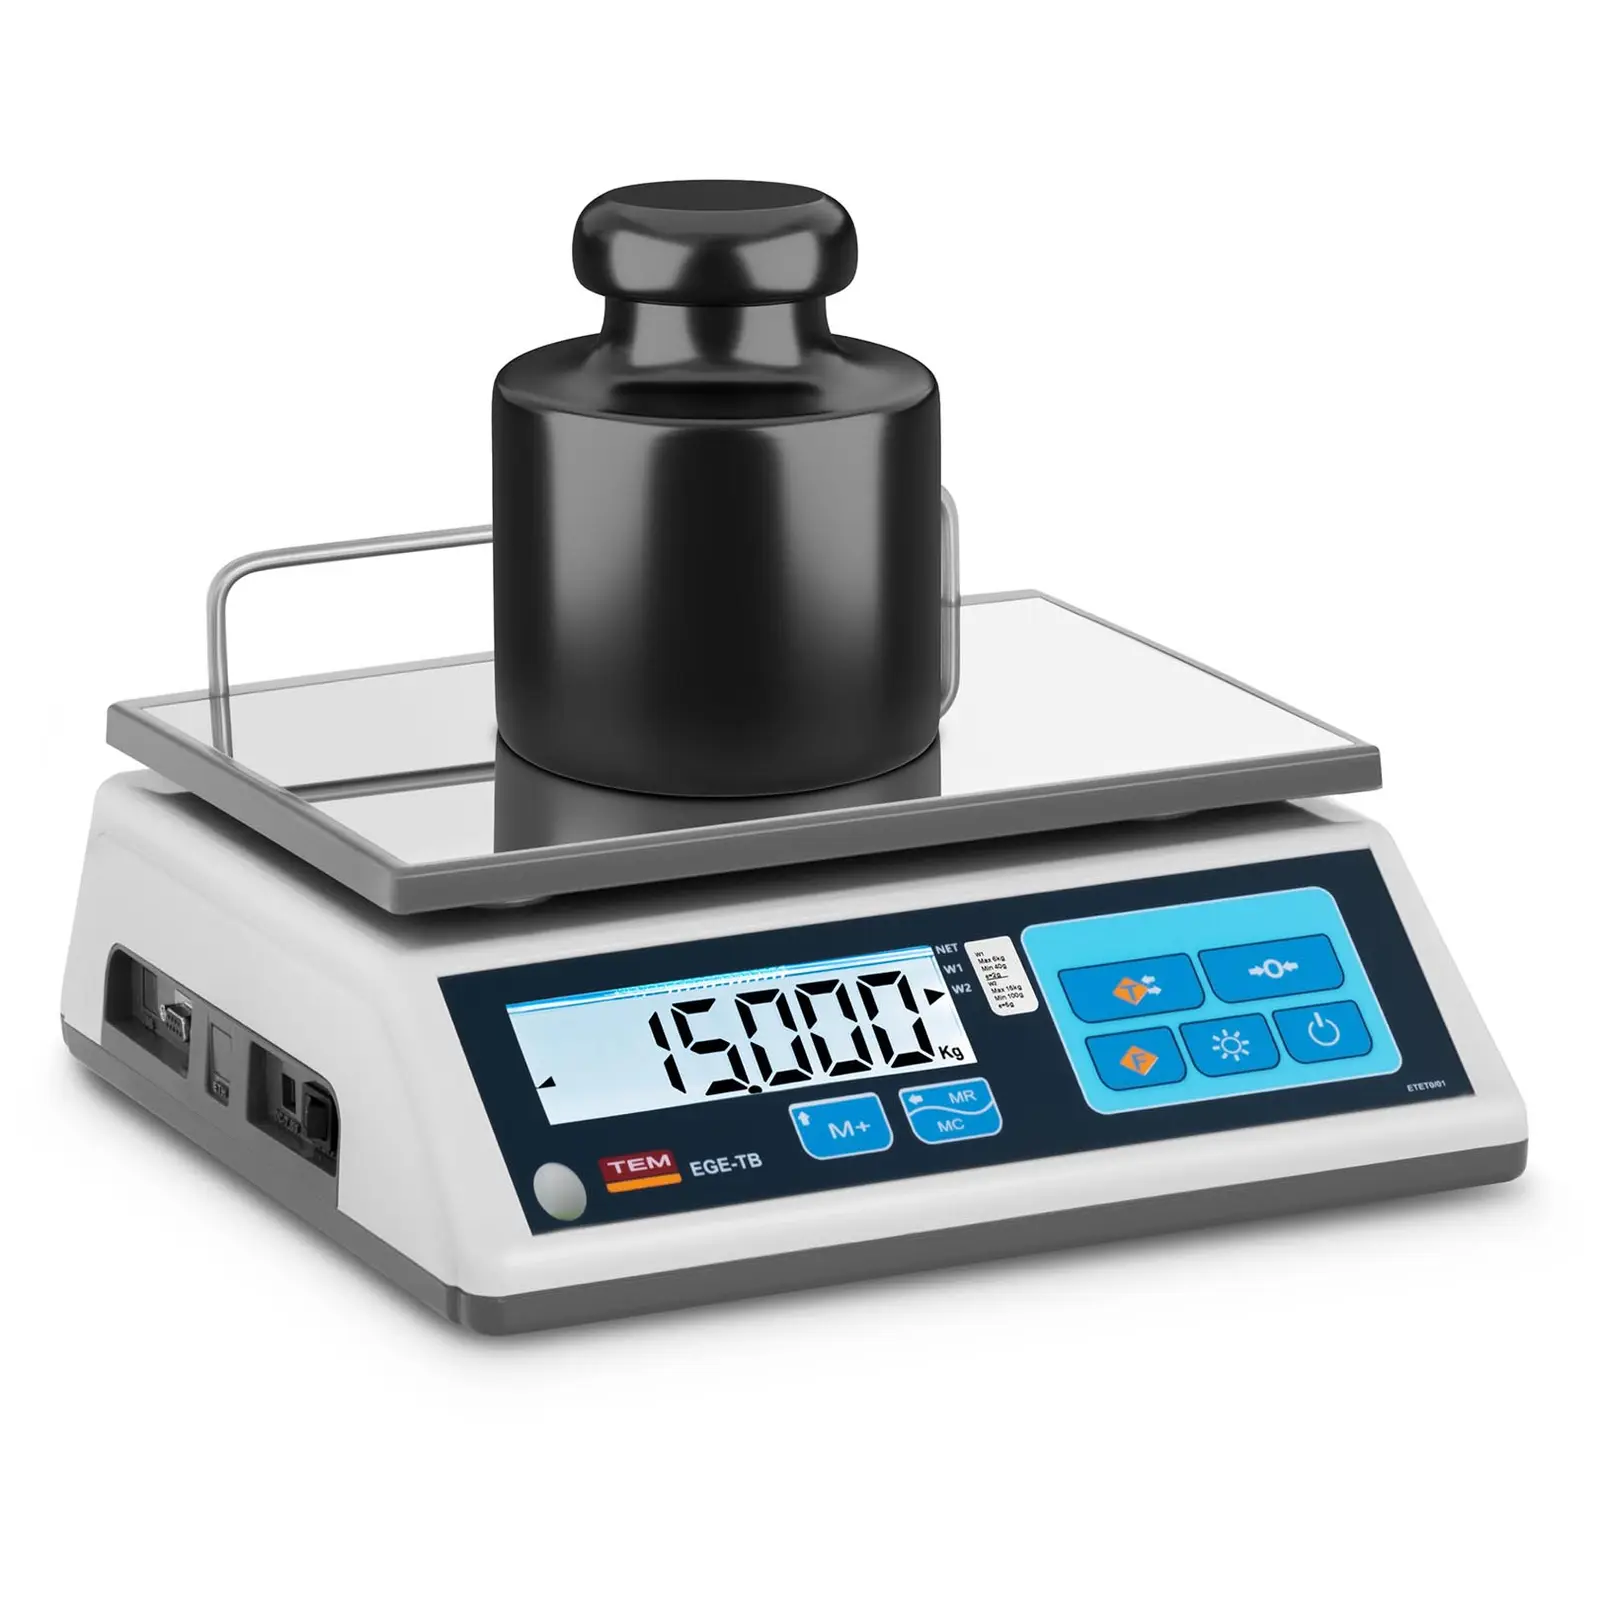 Balança de pesagem - Calibrada - 15 kg / 5 g - LCD - Memória